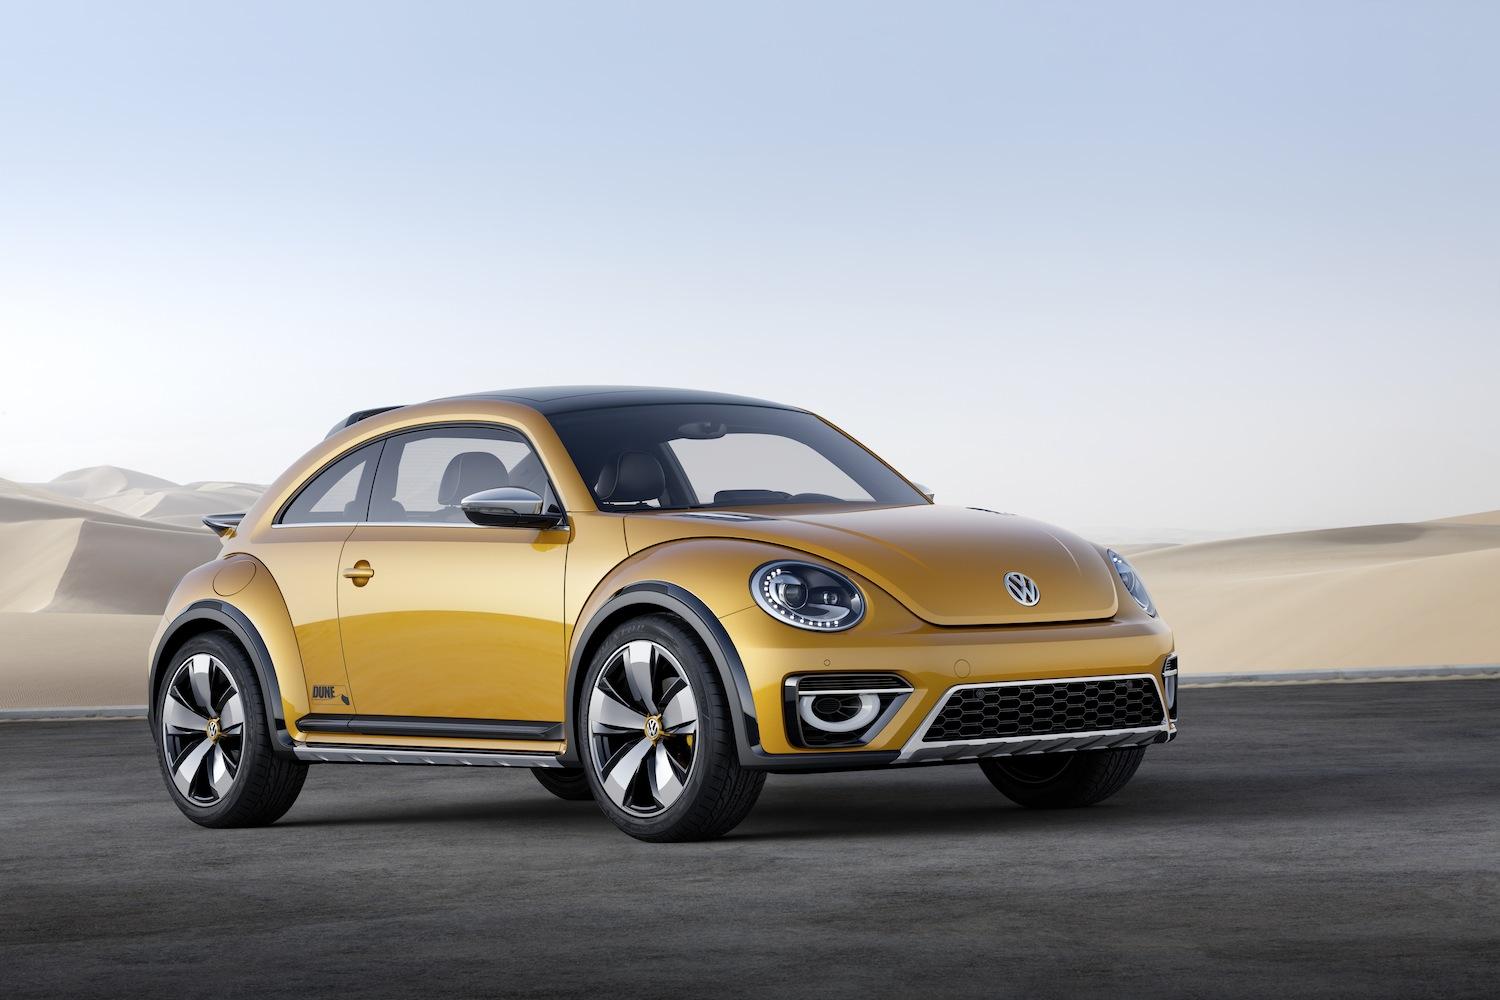 Volkswagen Beelte Dune Concept